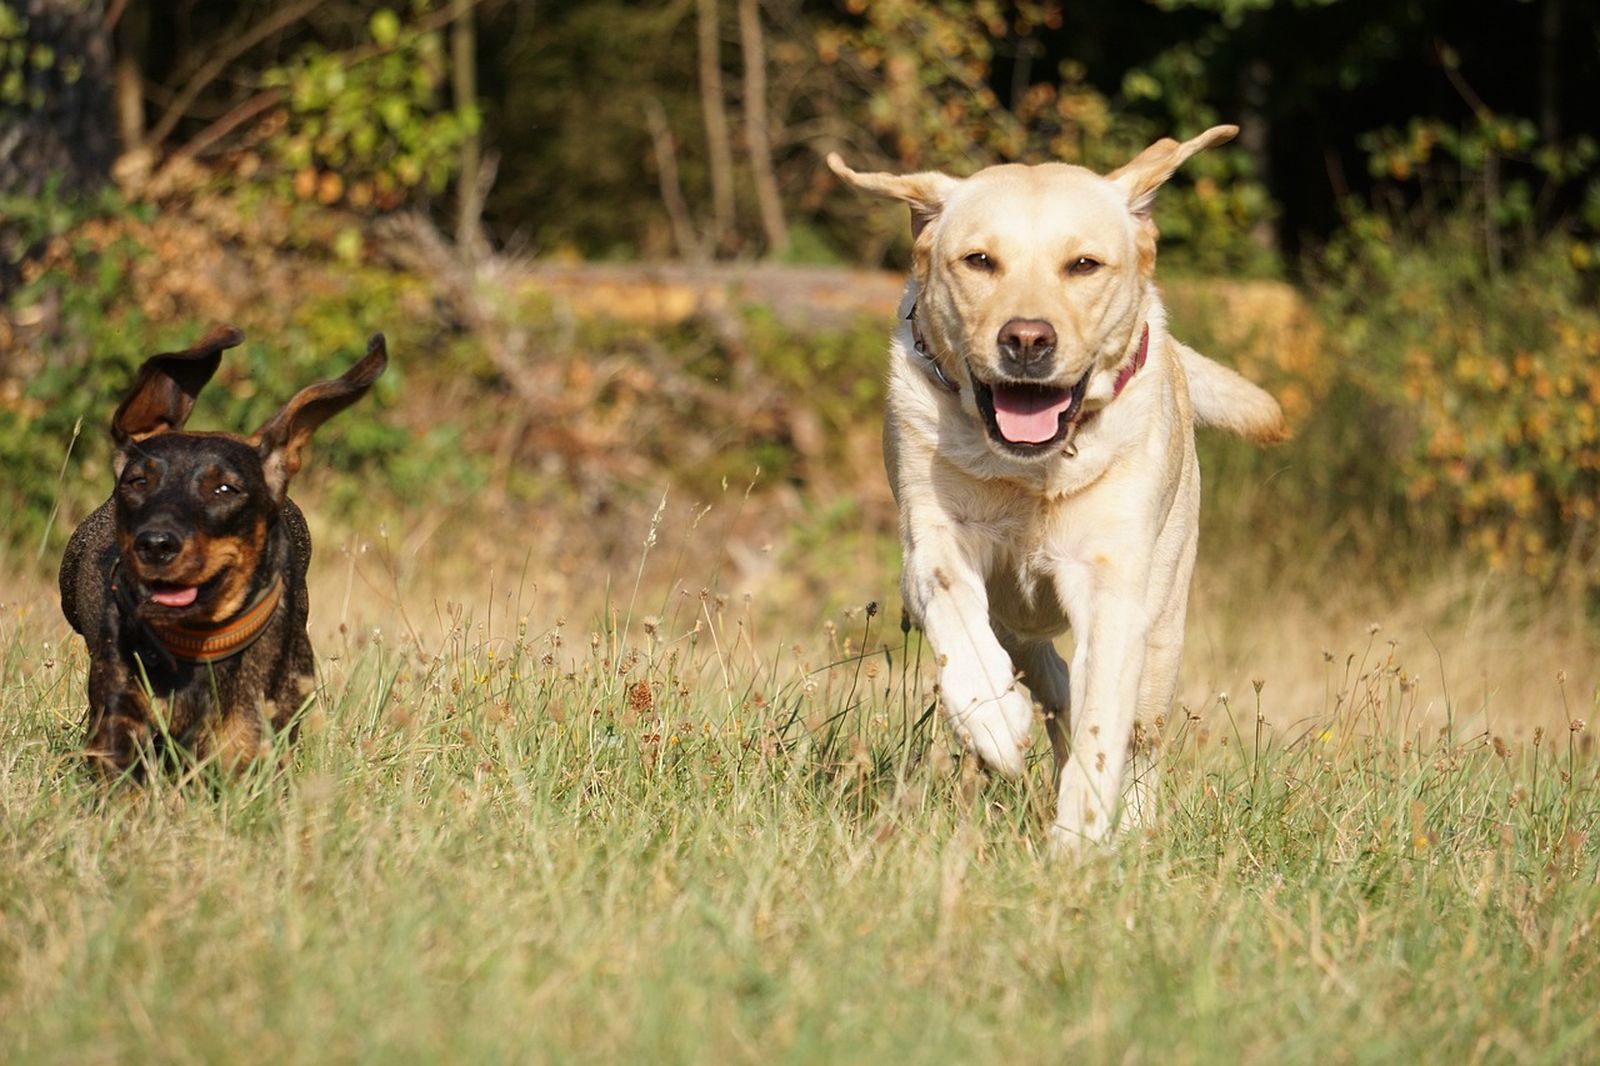 Ein saufarbener Rauhhaardackel läuft neben einem beigefarbenen Labrador Retriever auf einer Wiese auf den Betrachter 